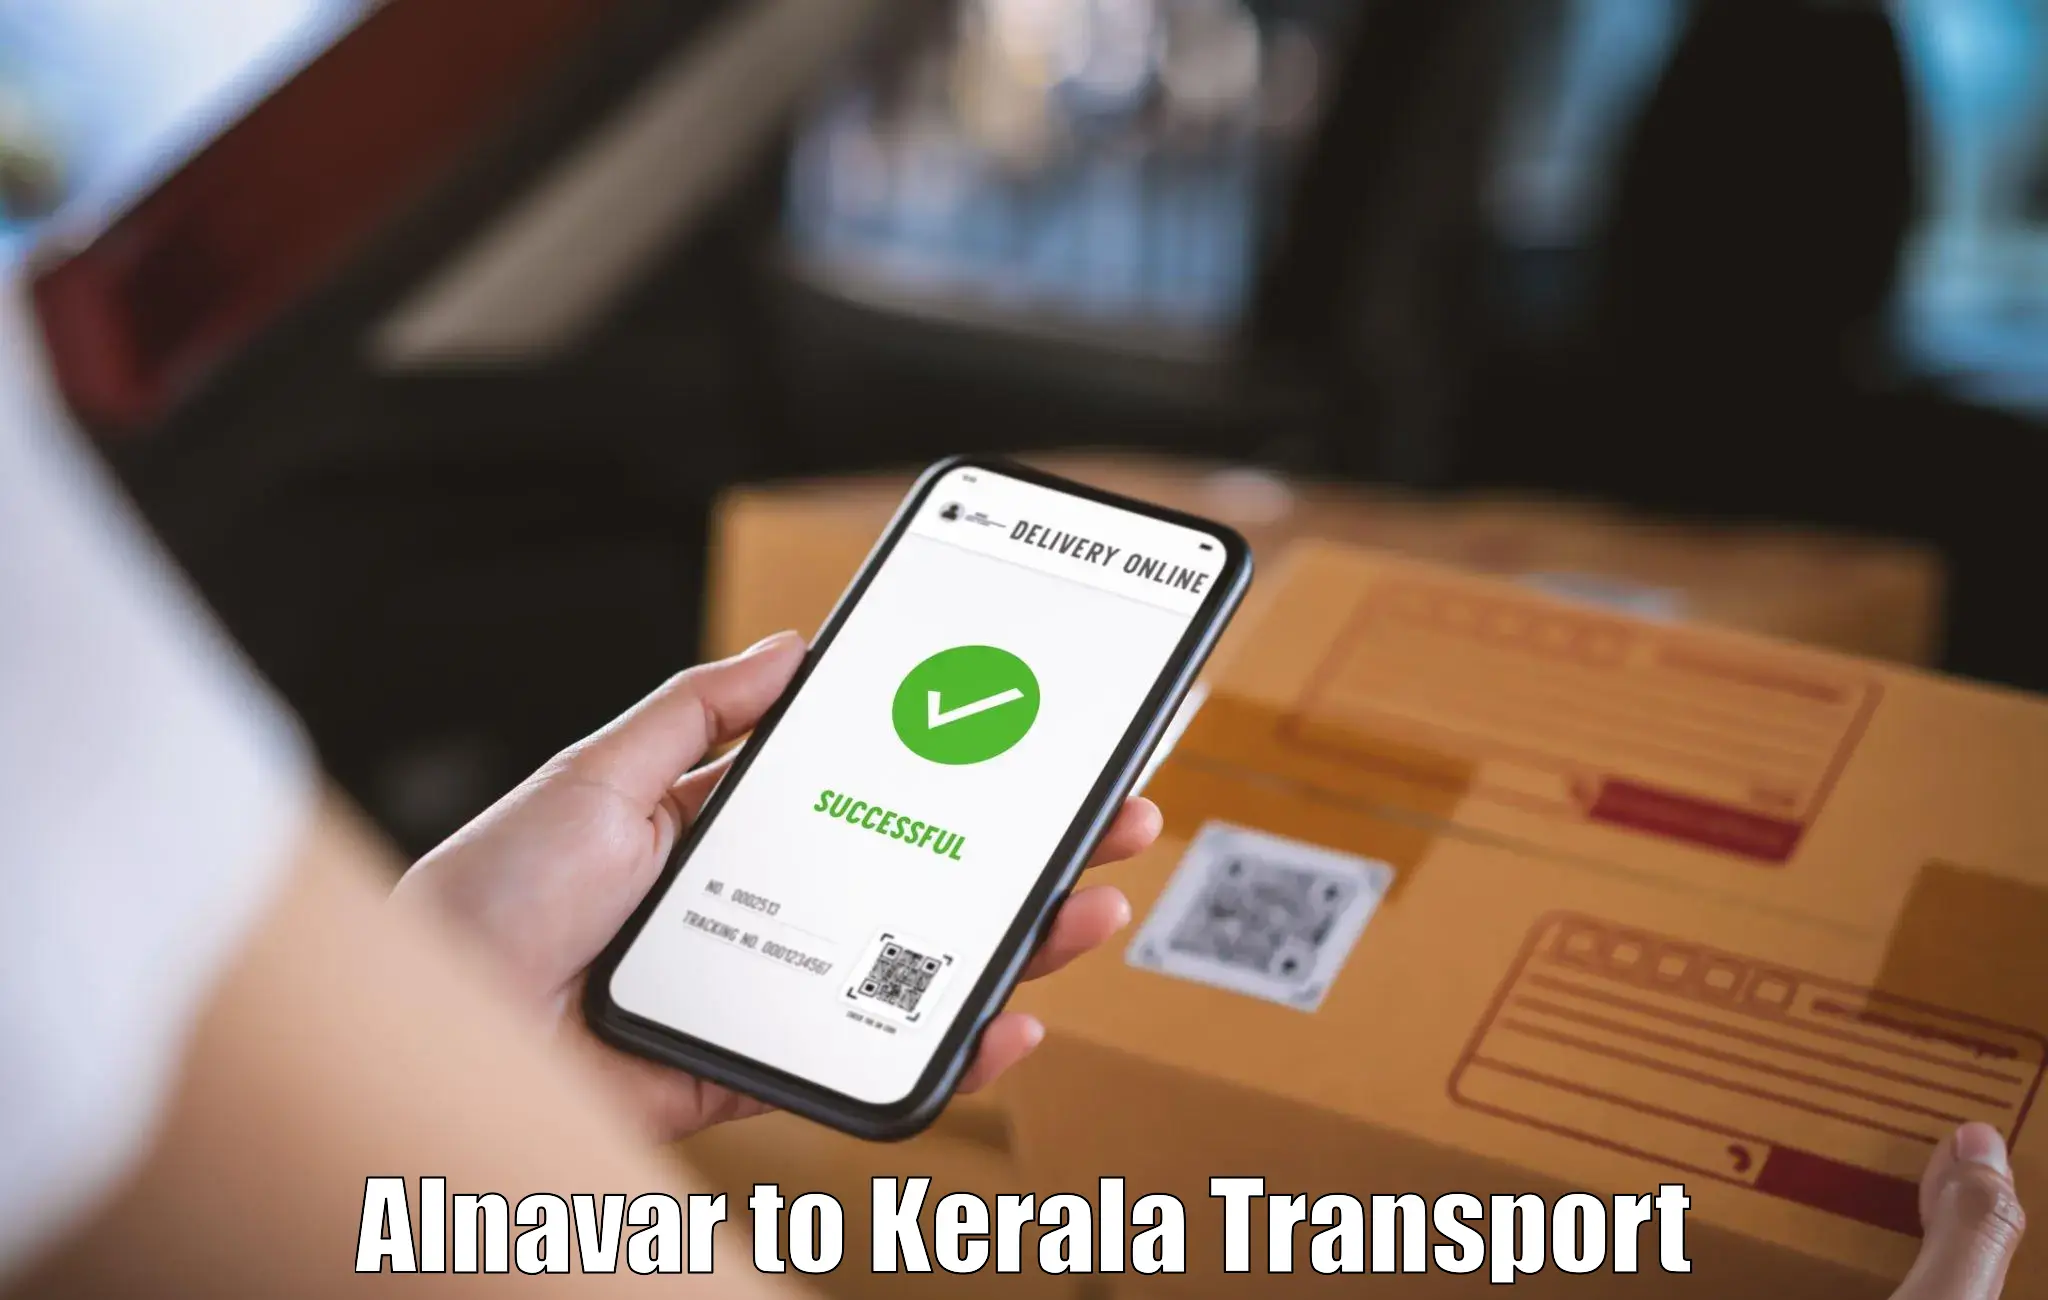 Package delivery services Alnavar to Manjeshwar